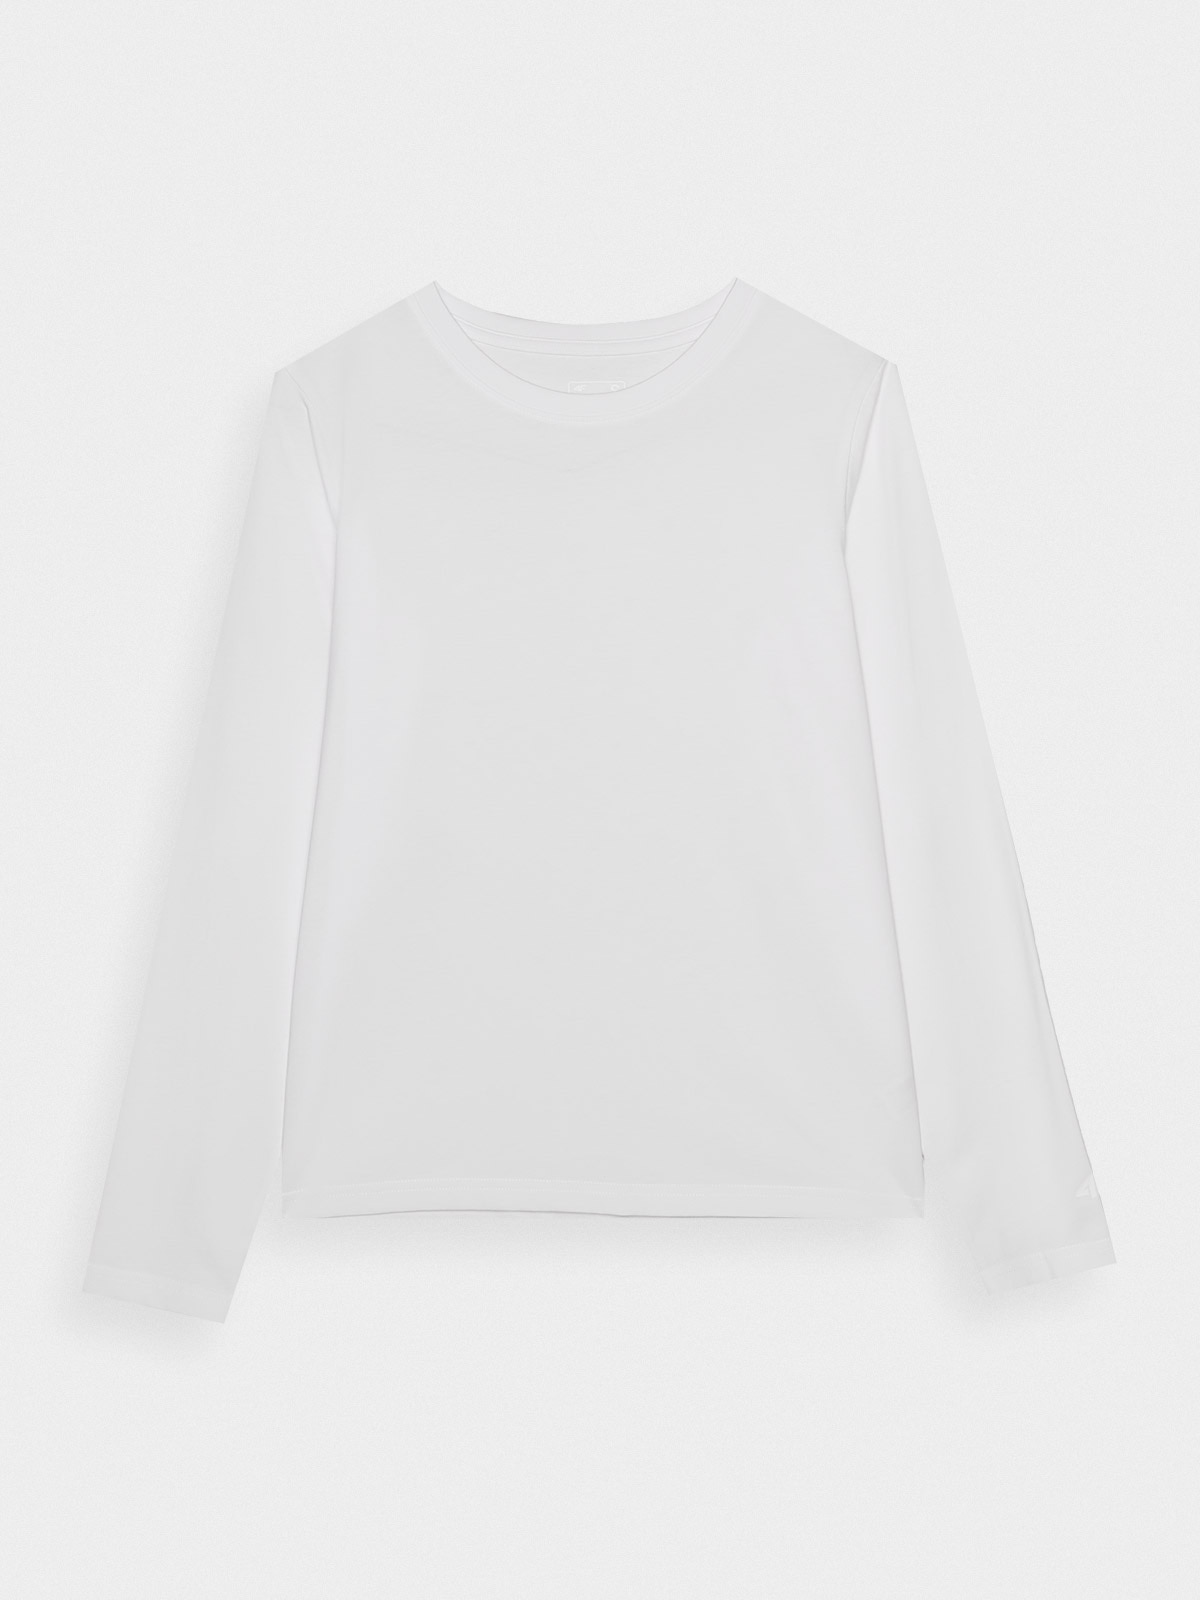 Dámské hladké tričko oversize s dlouhými rukávy - bílé